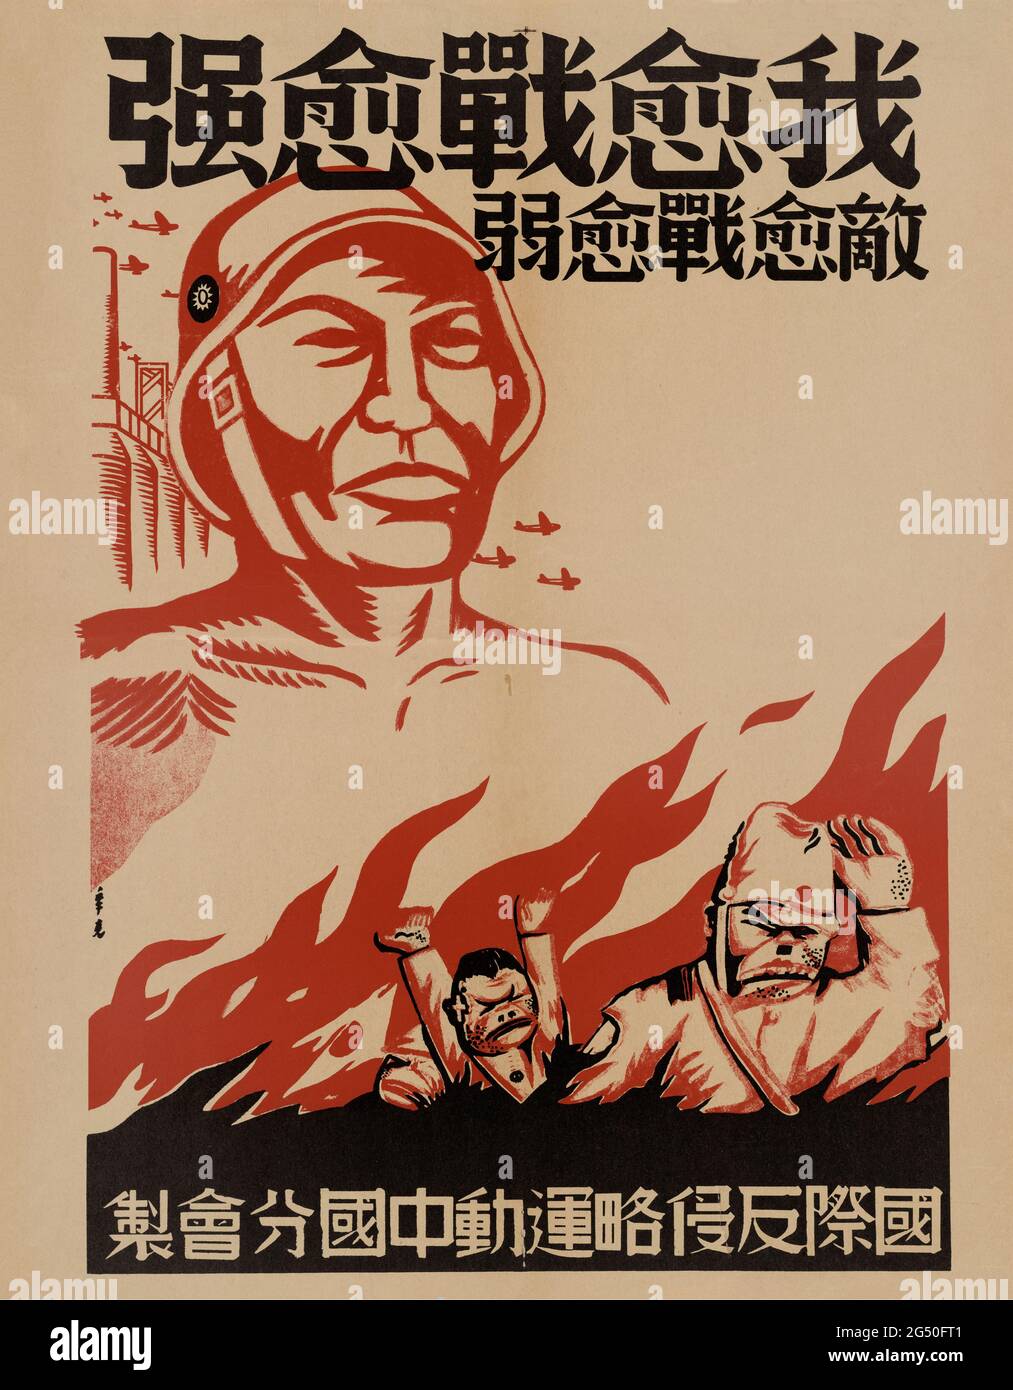 Antikjapanisches Propagandaposter der chinesischen Kuomintang. Zweiter chinesisch-japanischer Krieg. 1937-1945 die Kuomintang (KMT) (chinesisch-nationalistischer Teil Stockfoto